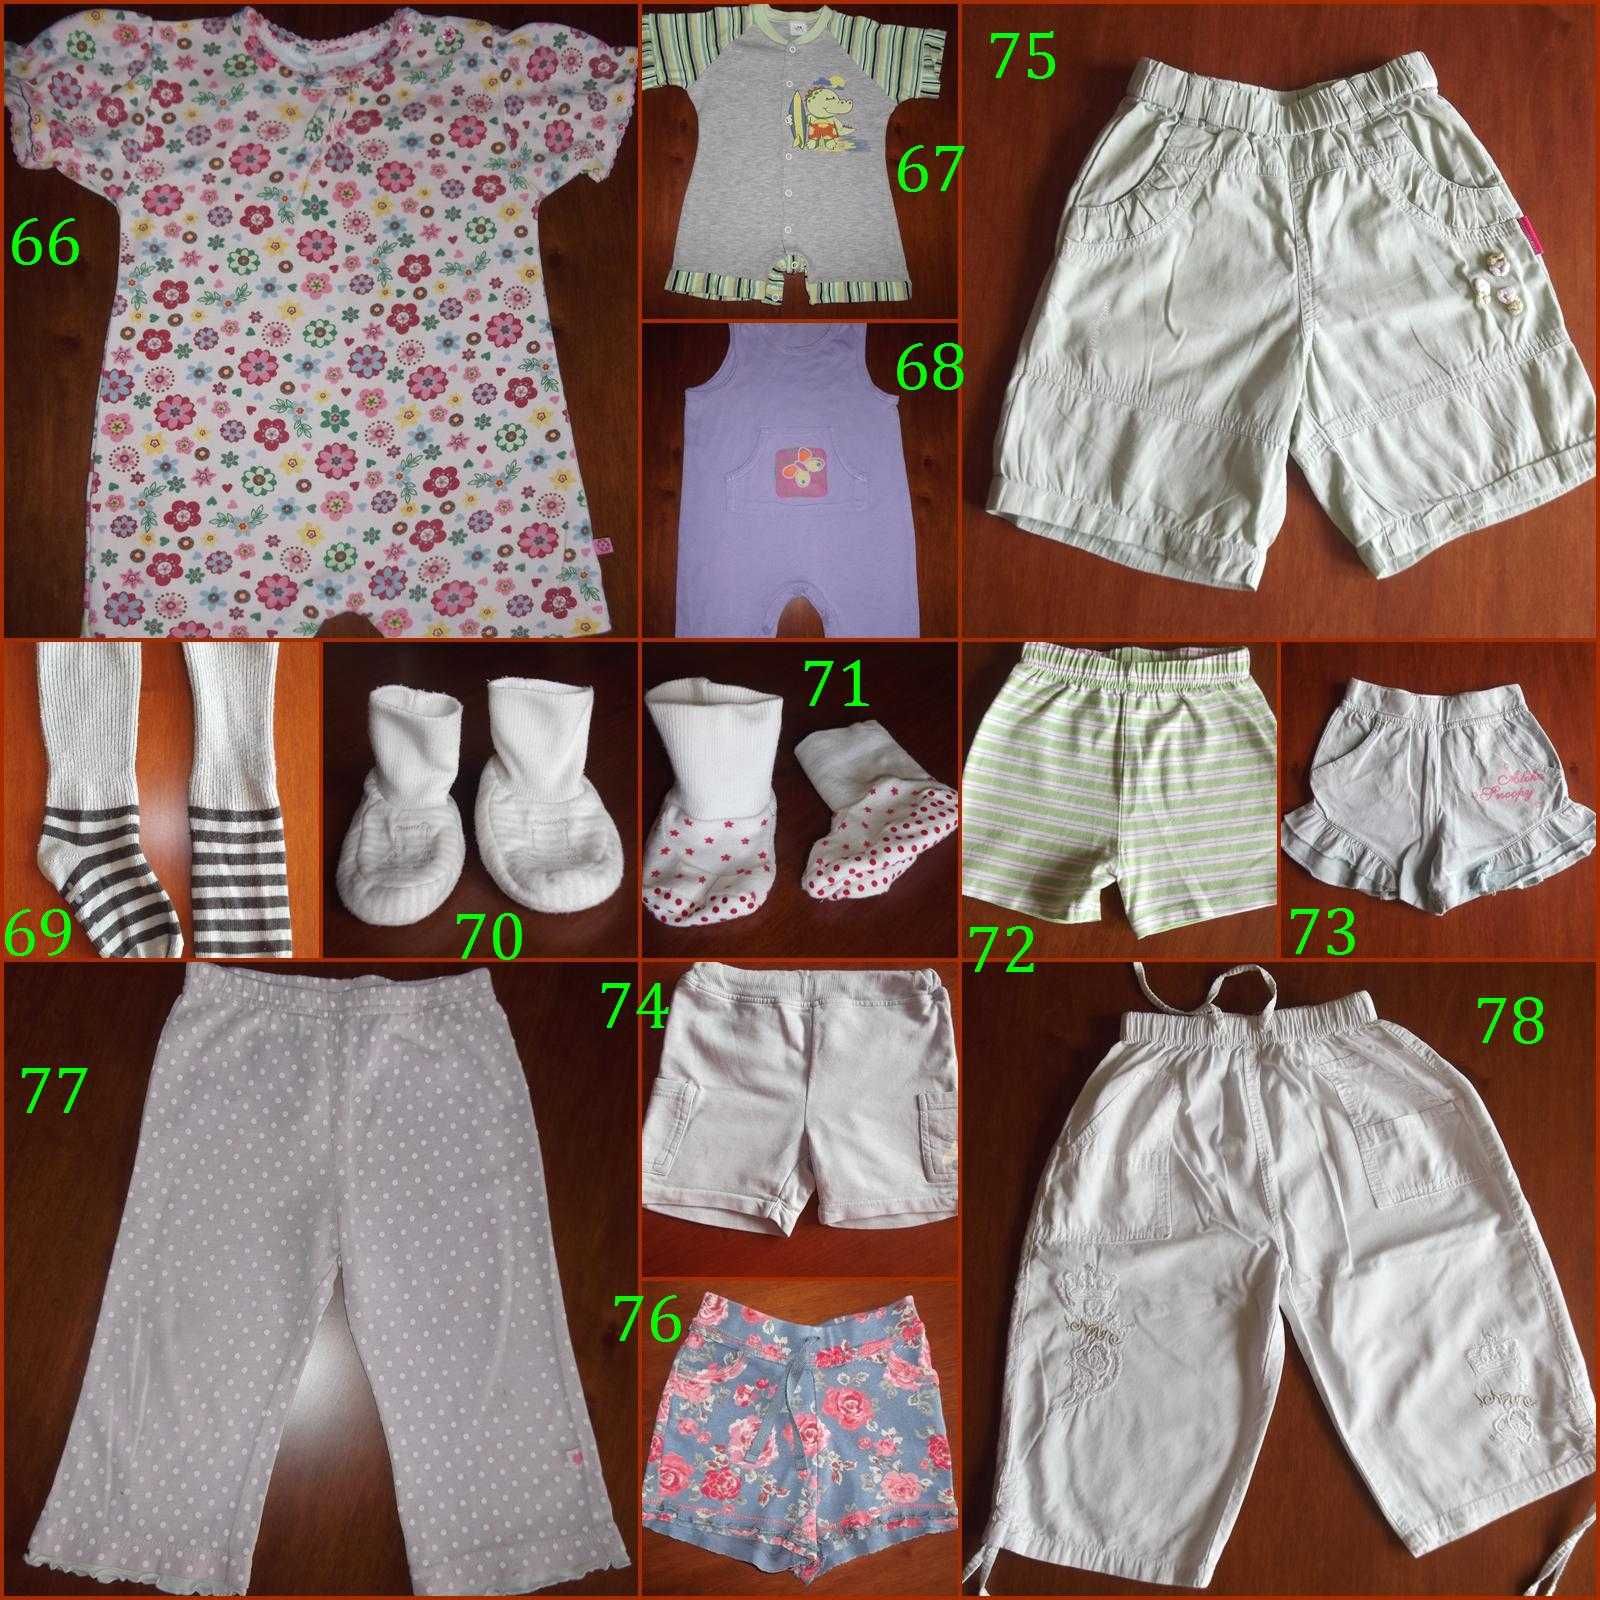 PAKA/Wyprawka szt.97 Bluza, bluzka, buty, pajacyk, spodnie i inne (5